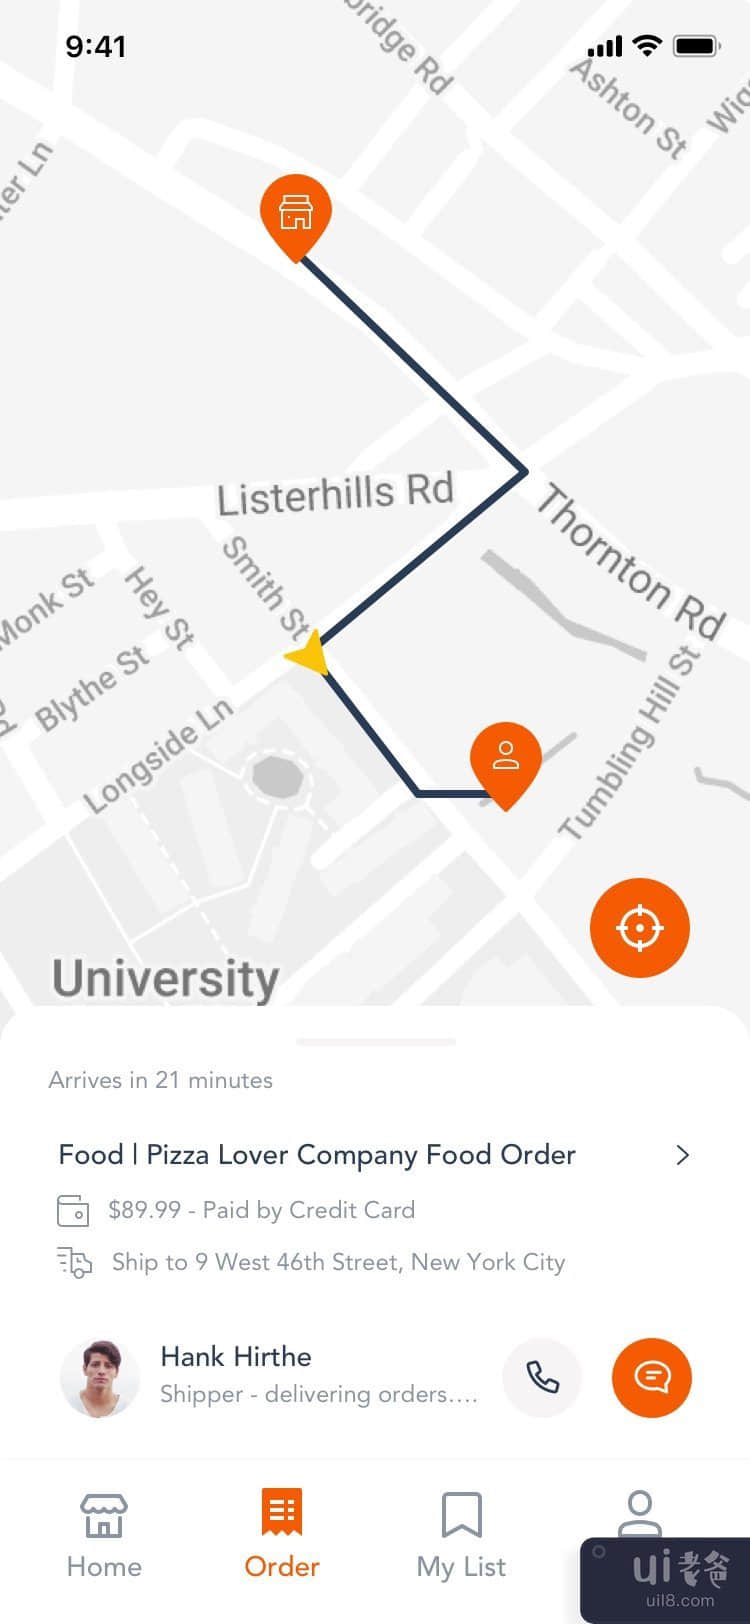 送餐应用模板 UI 套件 #2(Food Delivery App Template Ui Kit #2)插图1